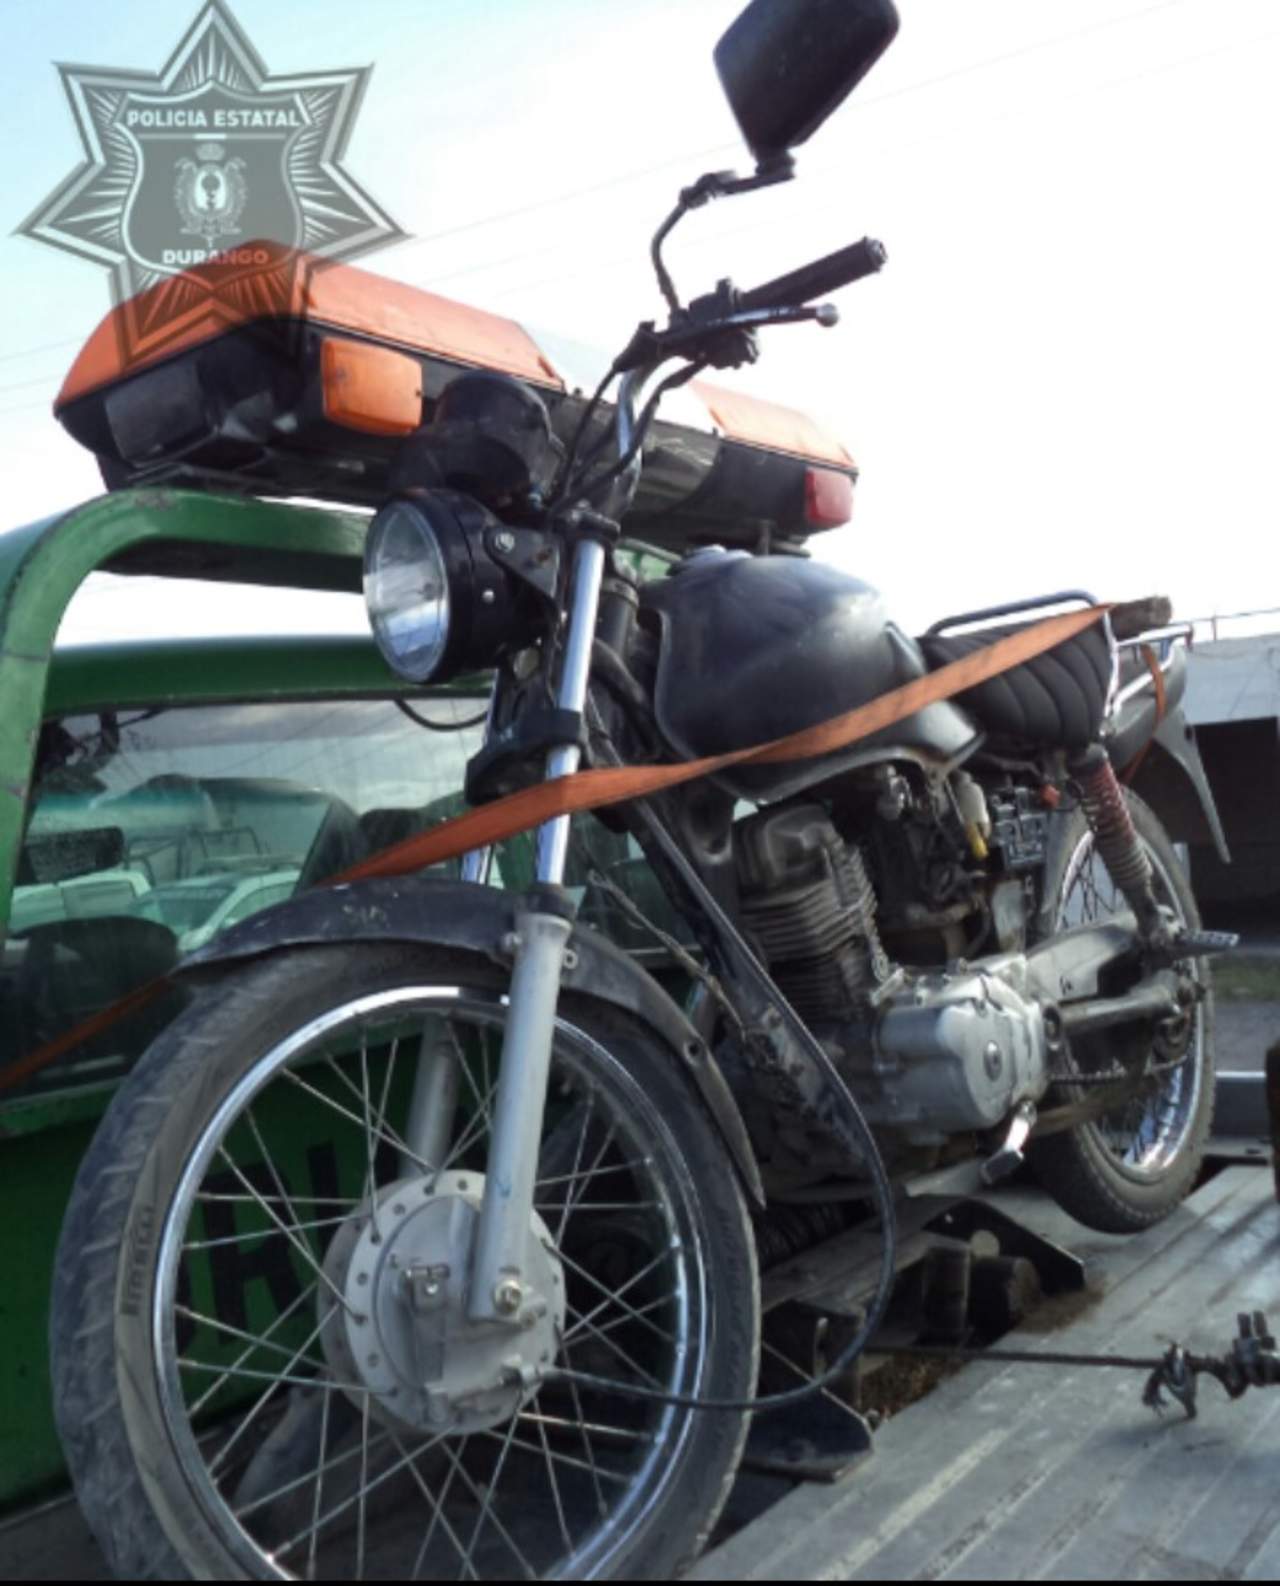 La moto resultó con reporte de robo el día 10 de agosto del 2013 en el estado de Durango. (ESPECIAL) 